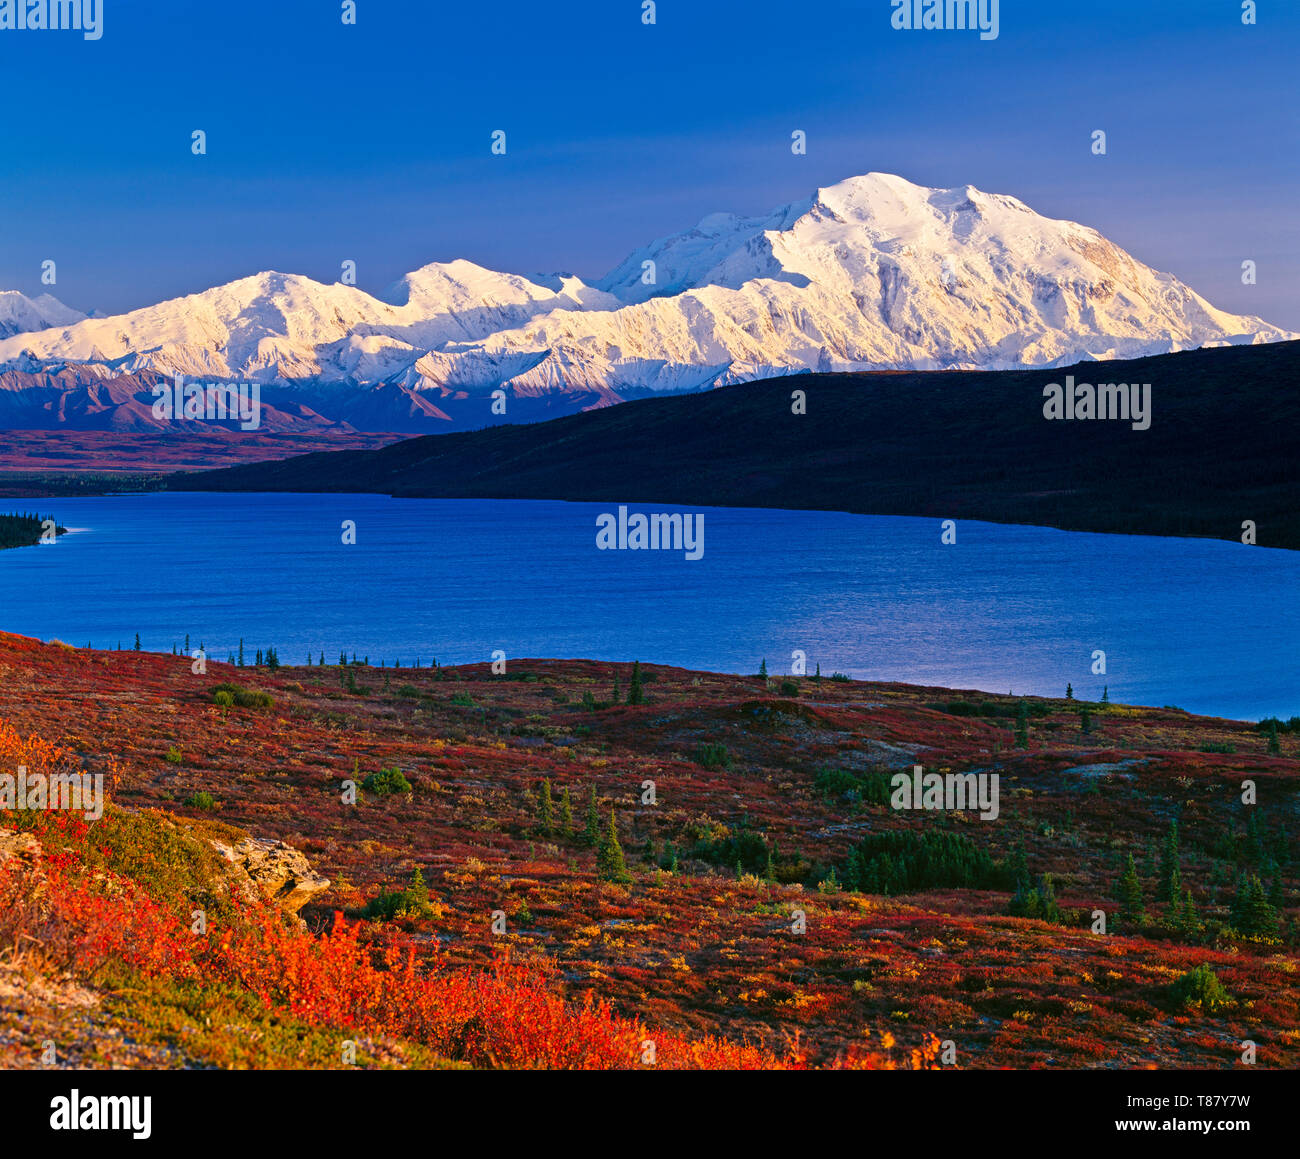 Mont McKinley (Denali) avec des couleurs d'automne rouges sur un ciel bleu clair avec le lac Wonder en face de la montagne, automne, Parc national Denali, Alaska Banque D'Images